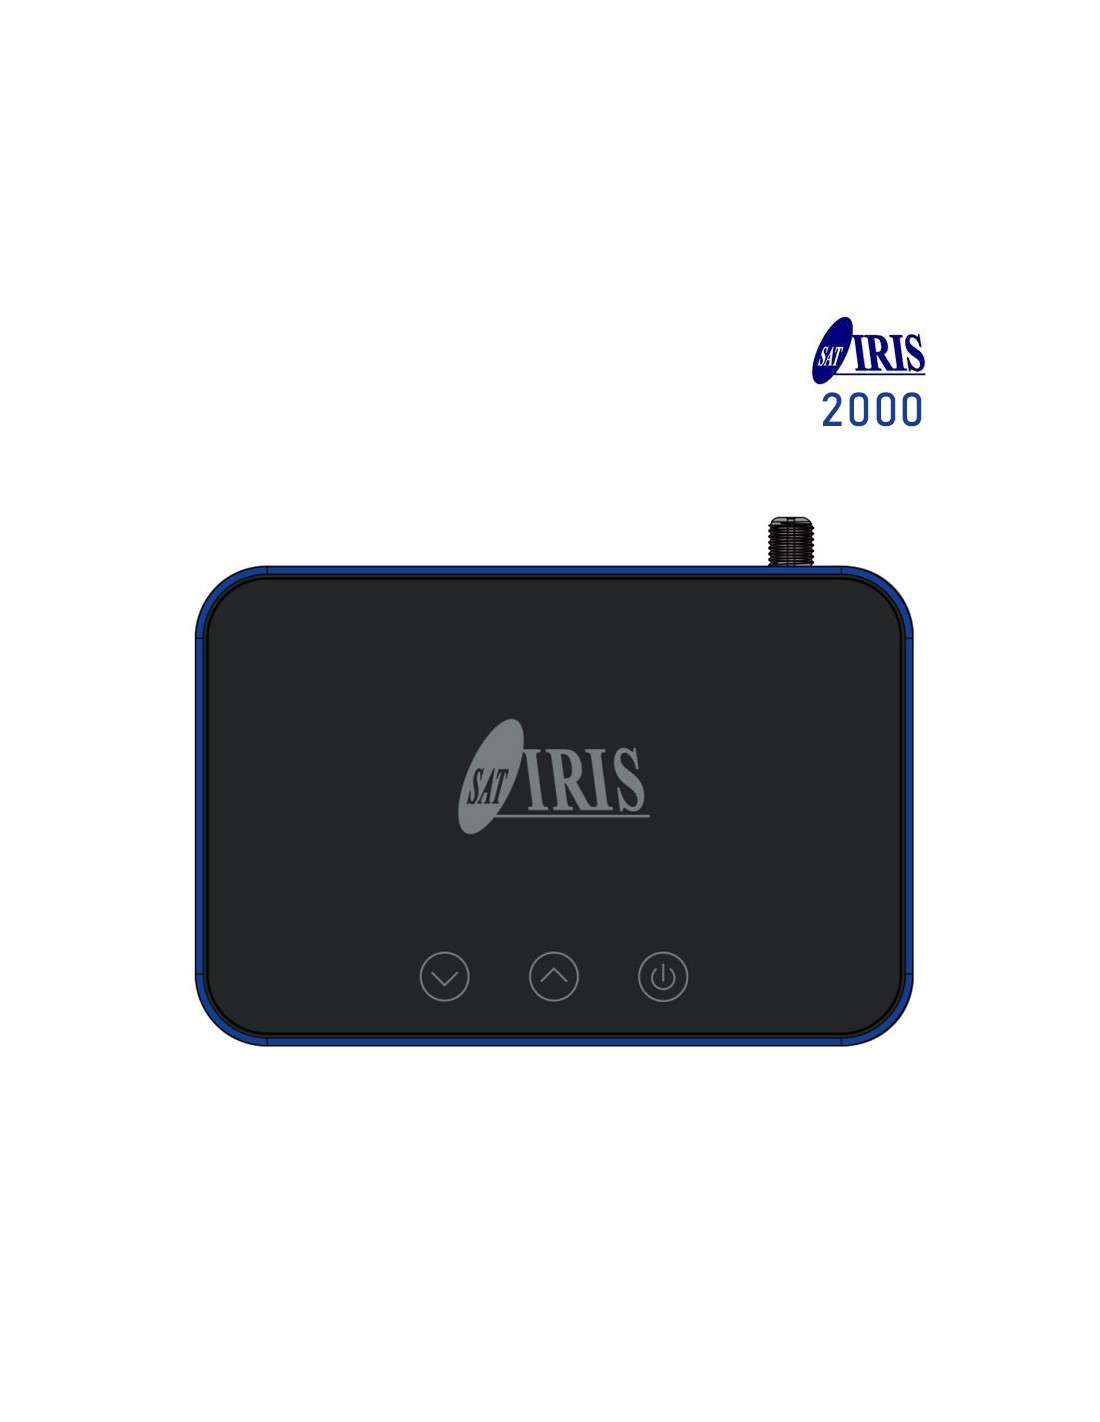 Iris 2000 HD - Firmware - TV, iPTV & SAT - Dekazeta